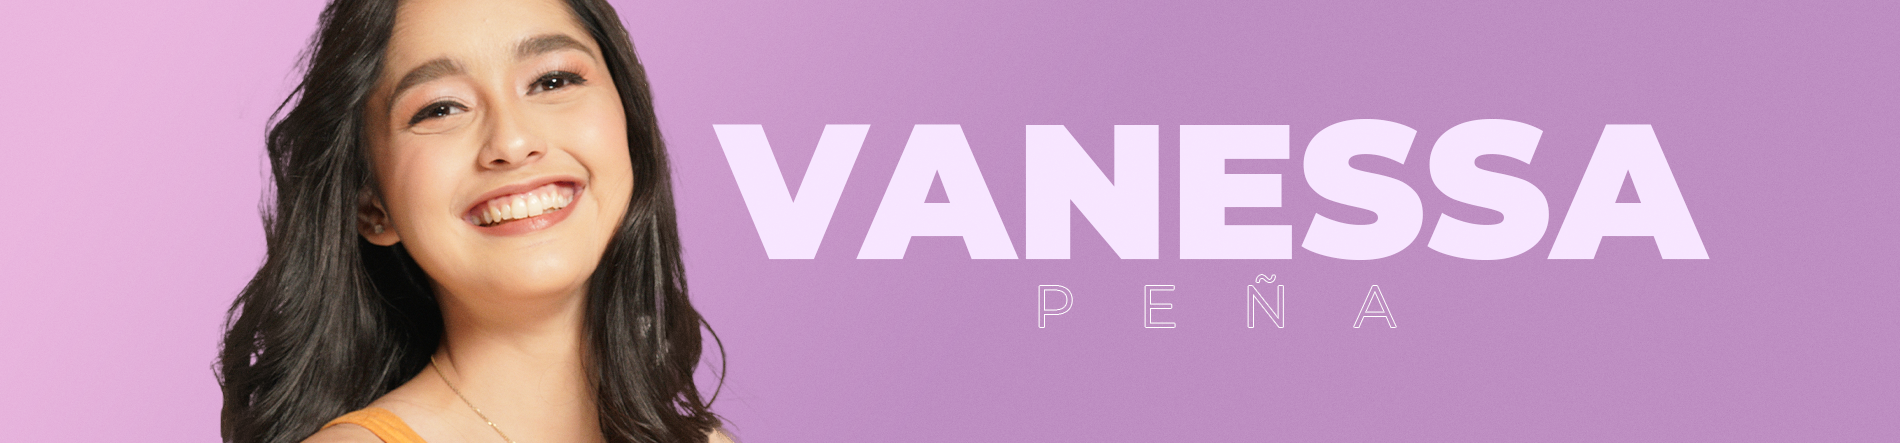 Vanessa Pena Desktop Banner